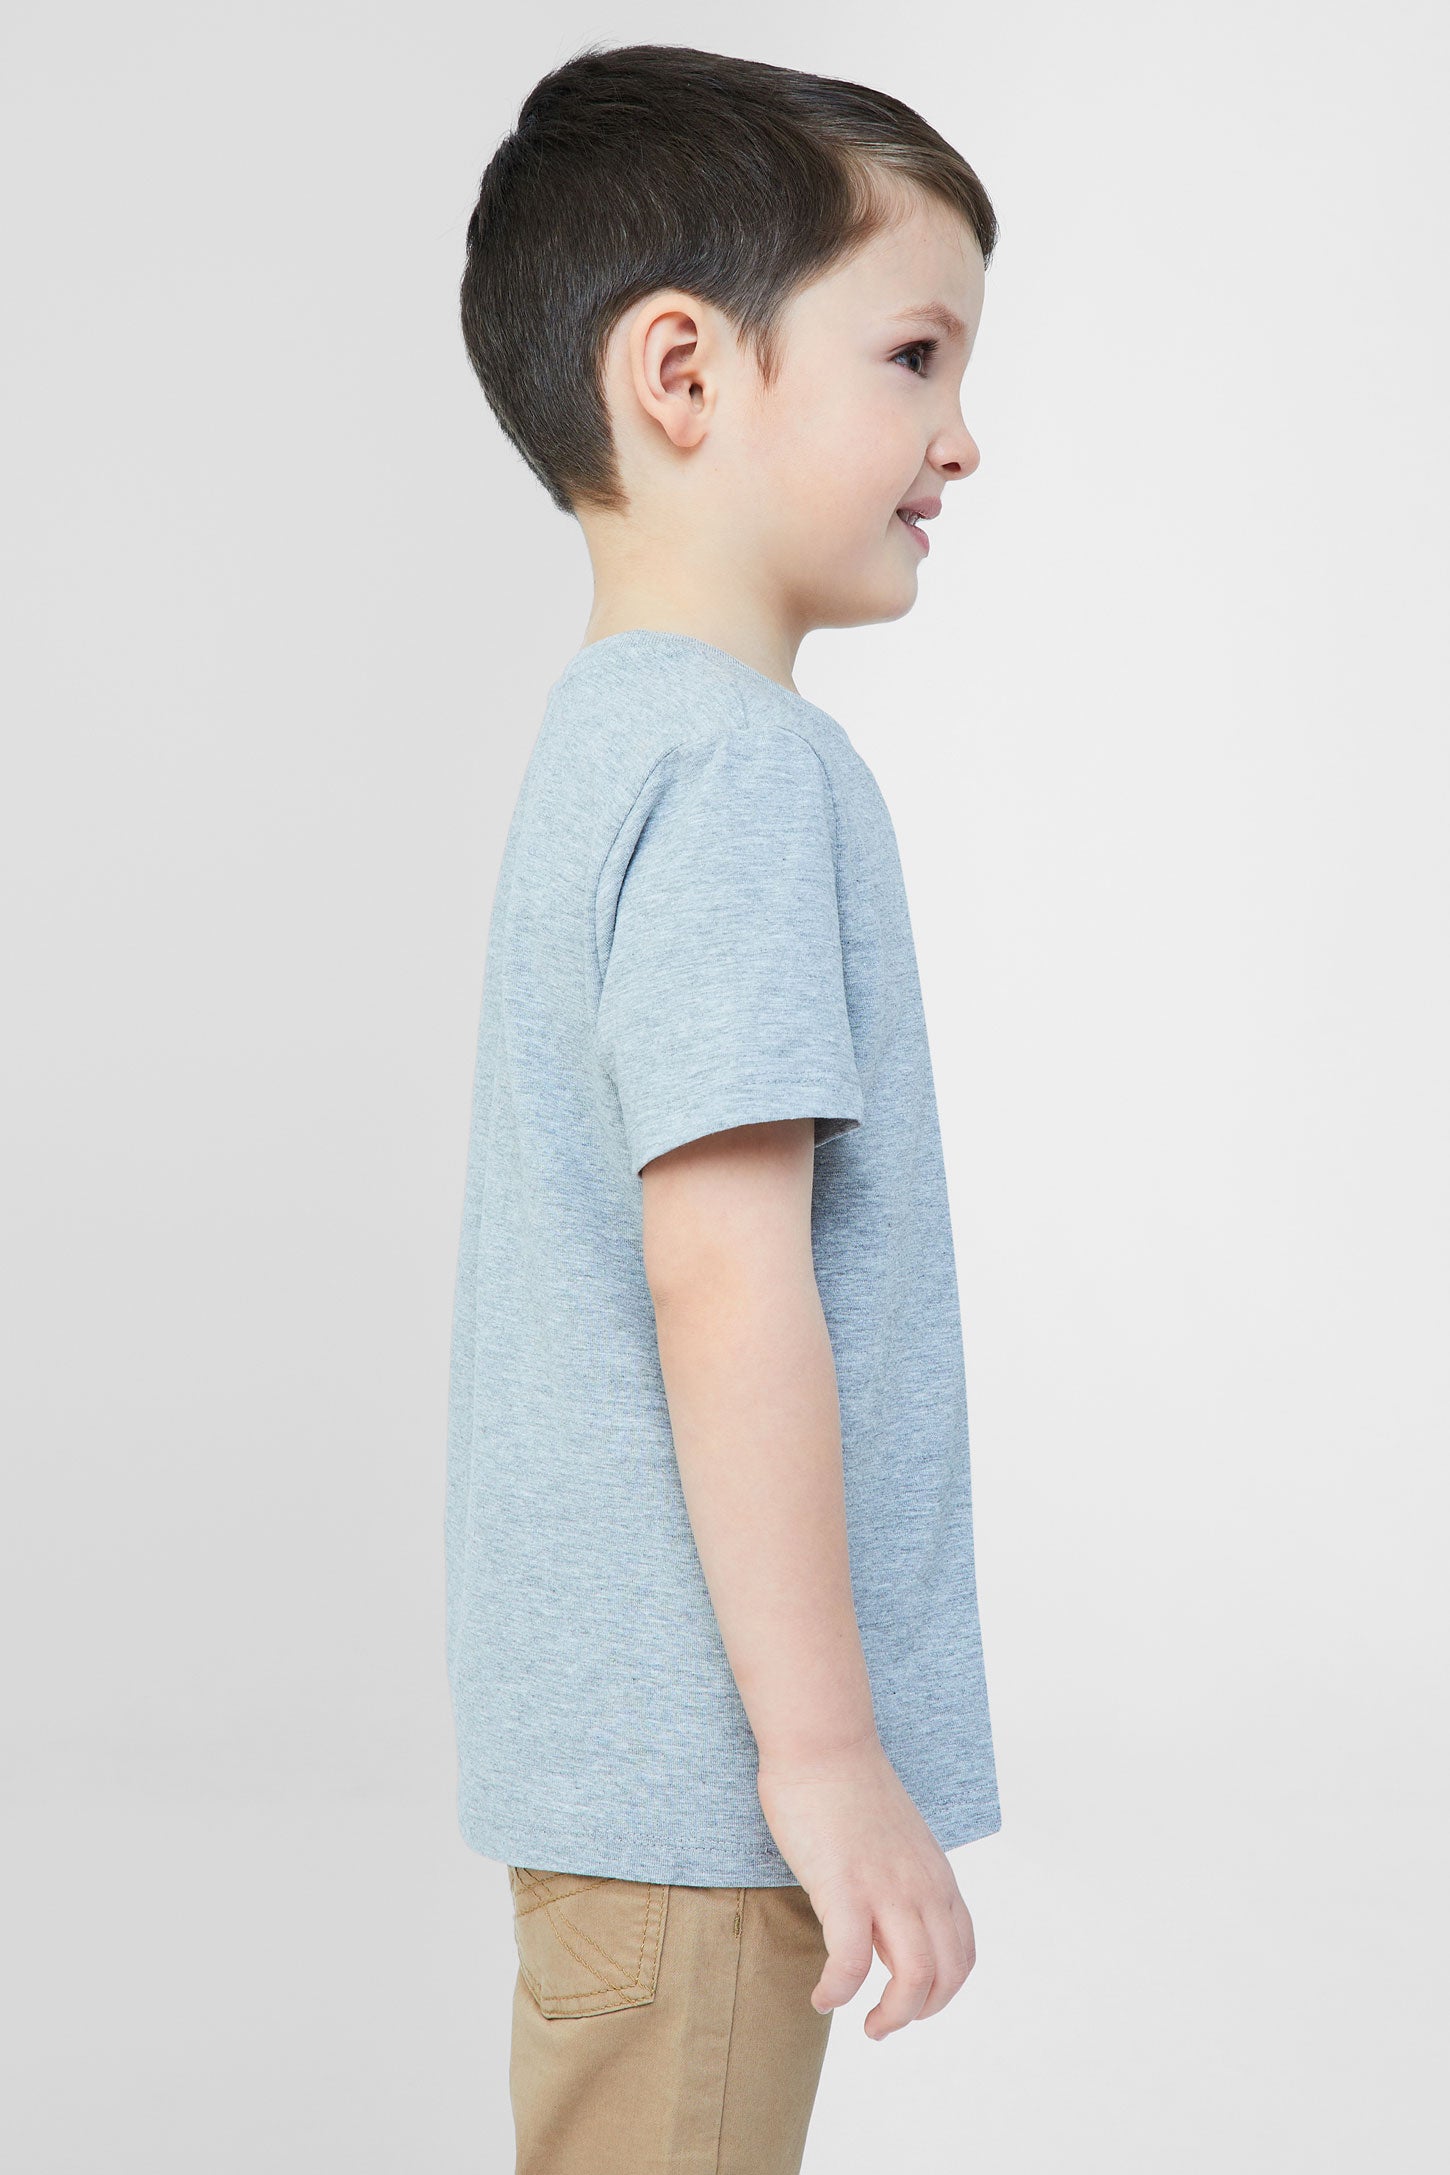 T-shirt essentiel, 2/20$ - Enfant garçon && GRIS MIXTE